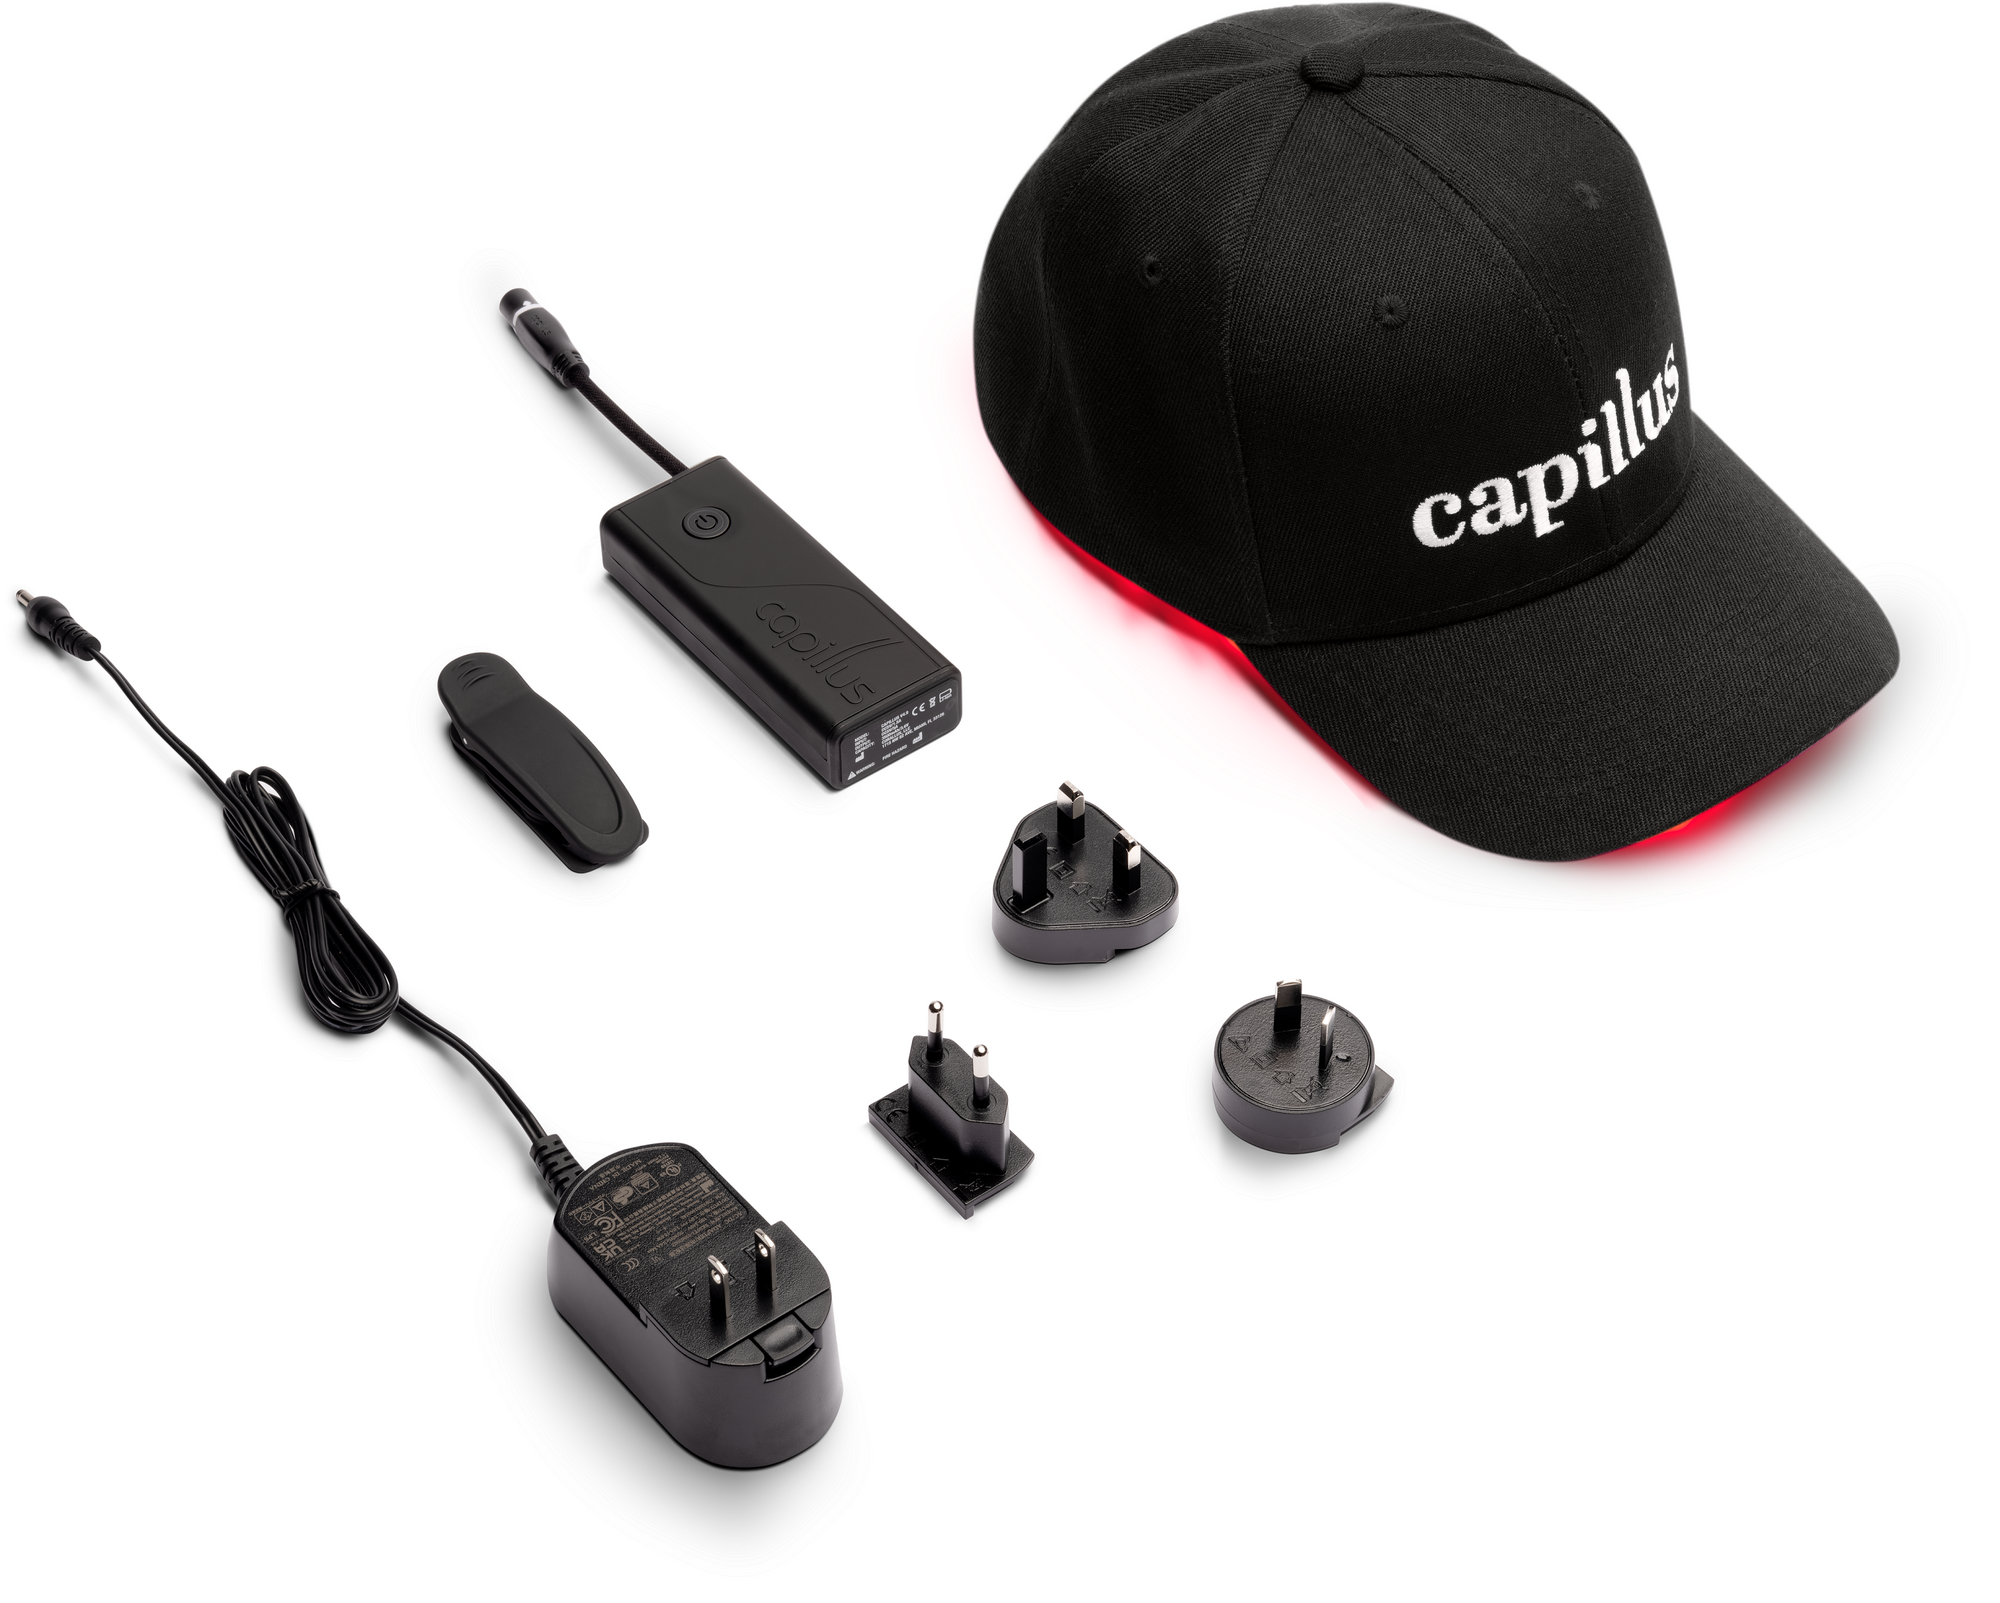 Capillus Pro | 272 laser